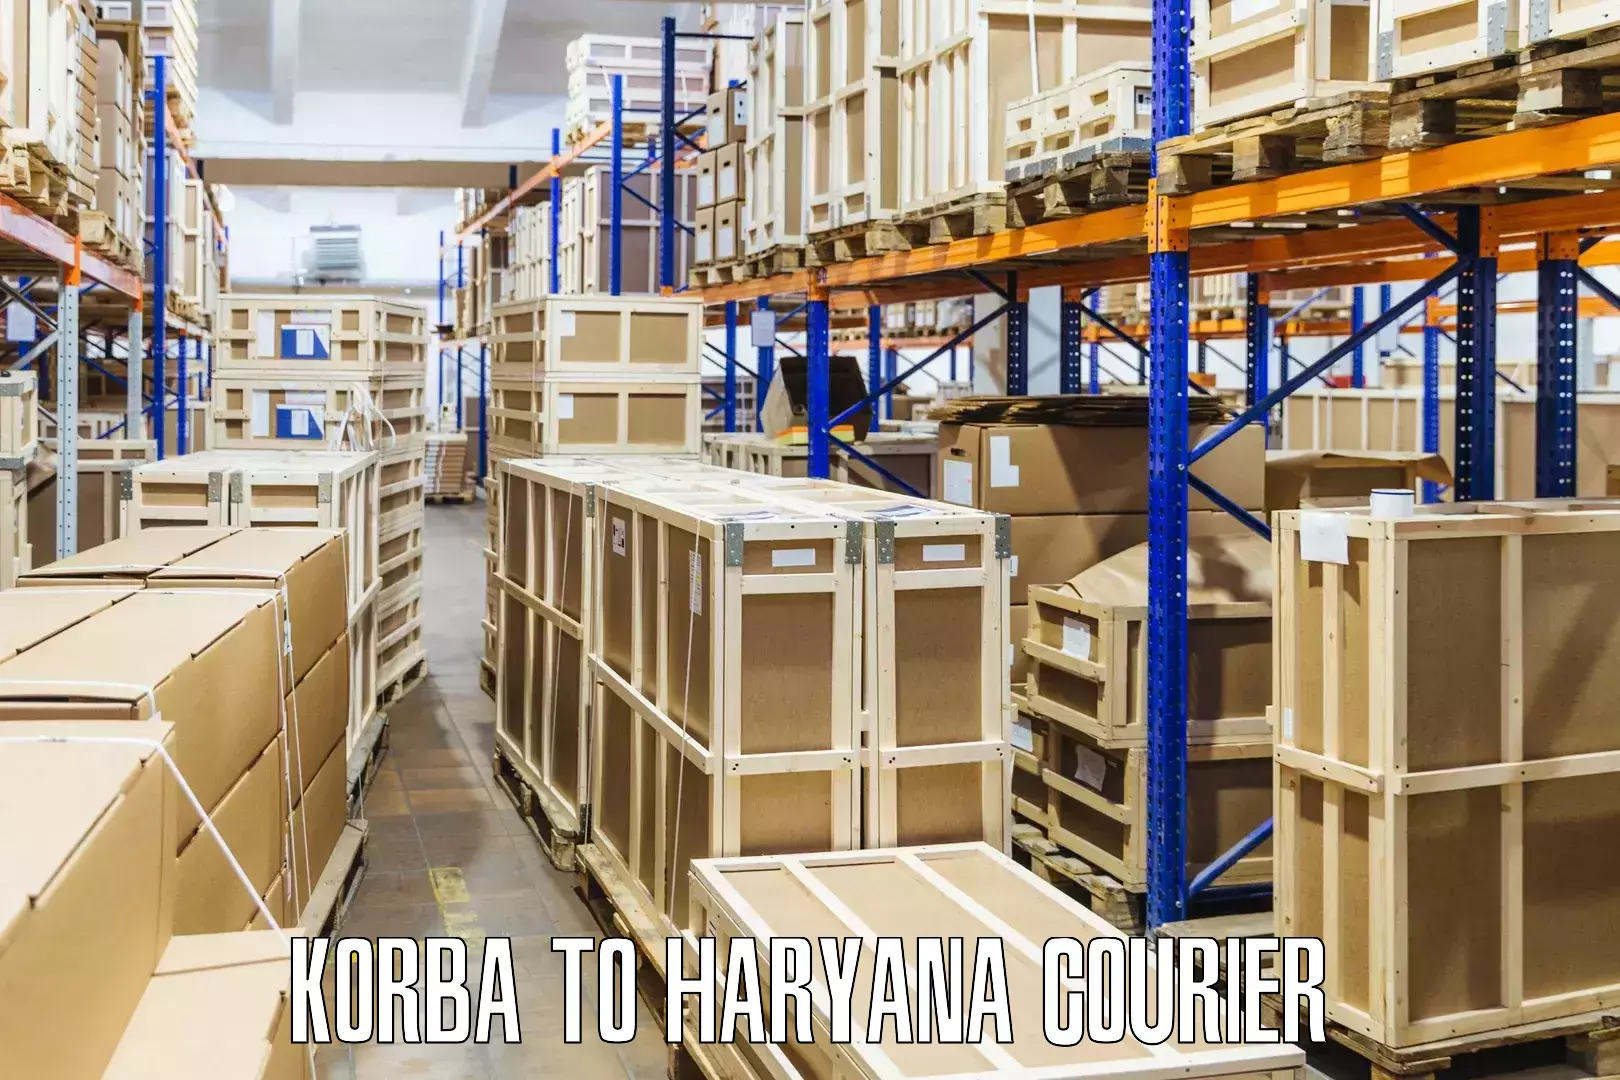 International courier networks Korba to Kurukshetra University